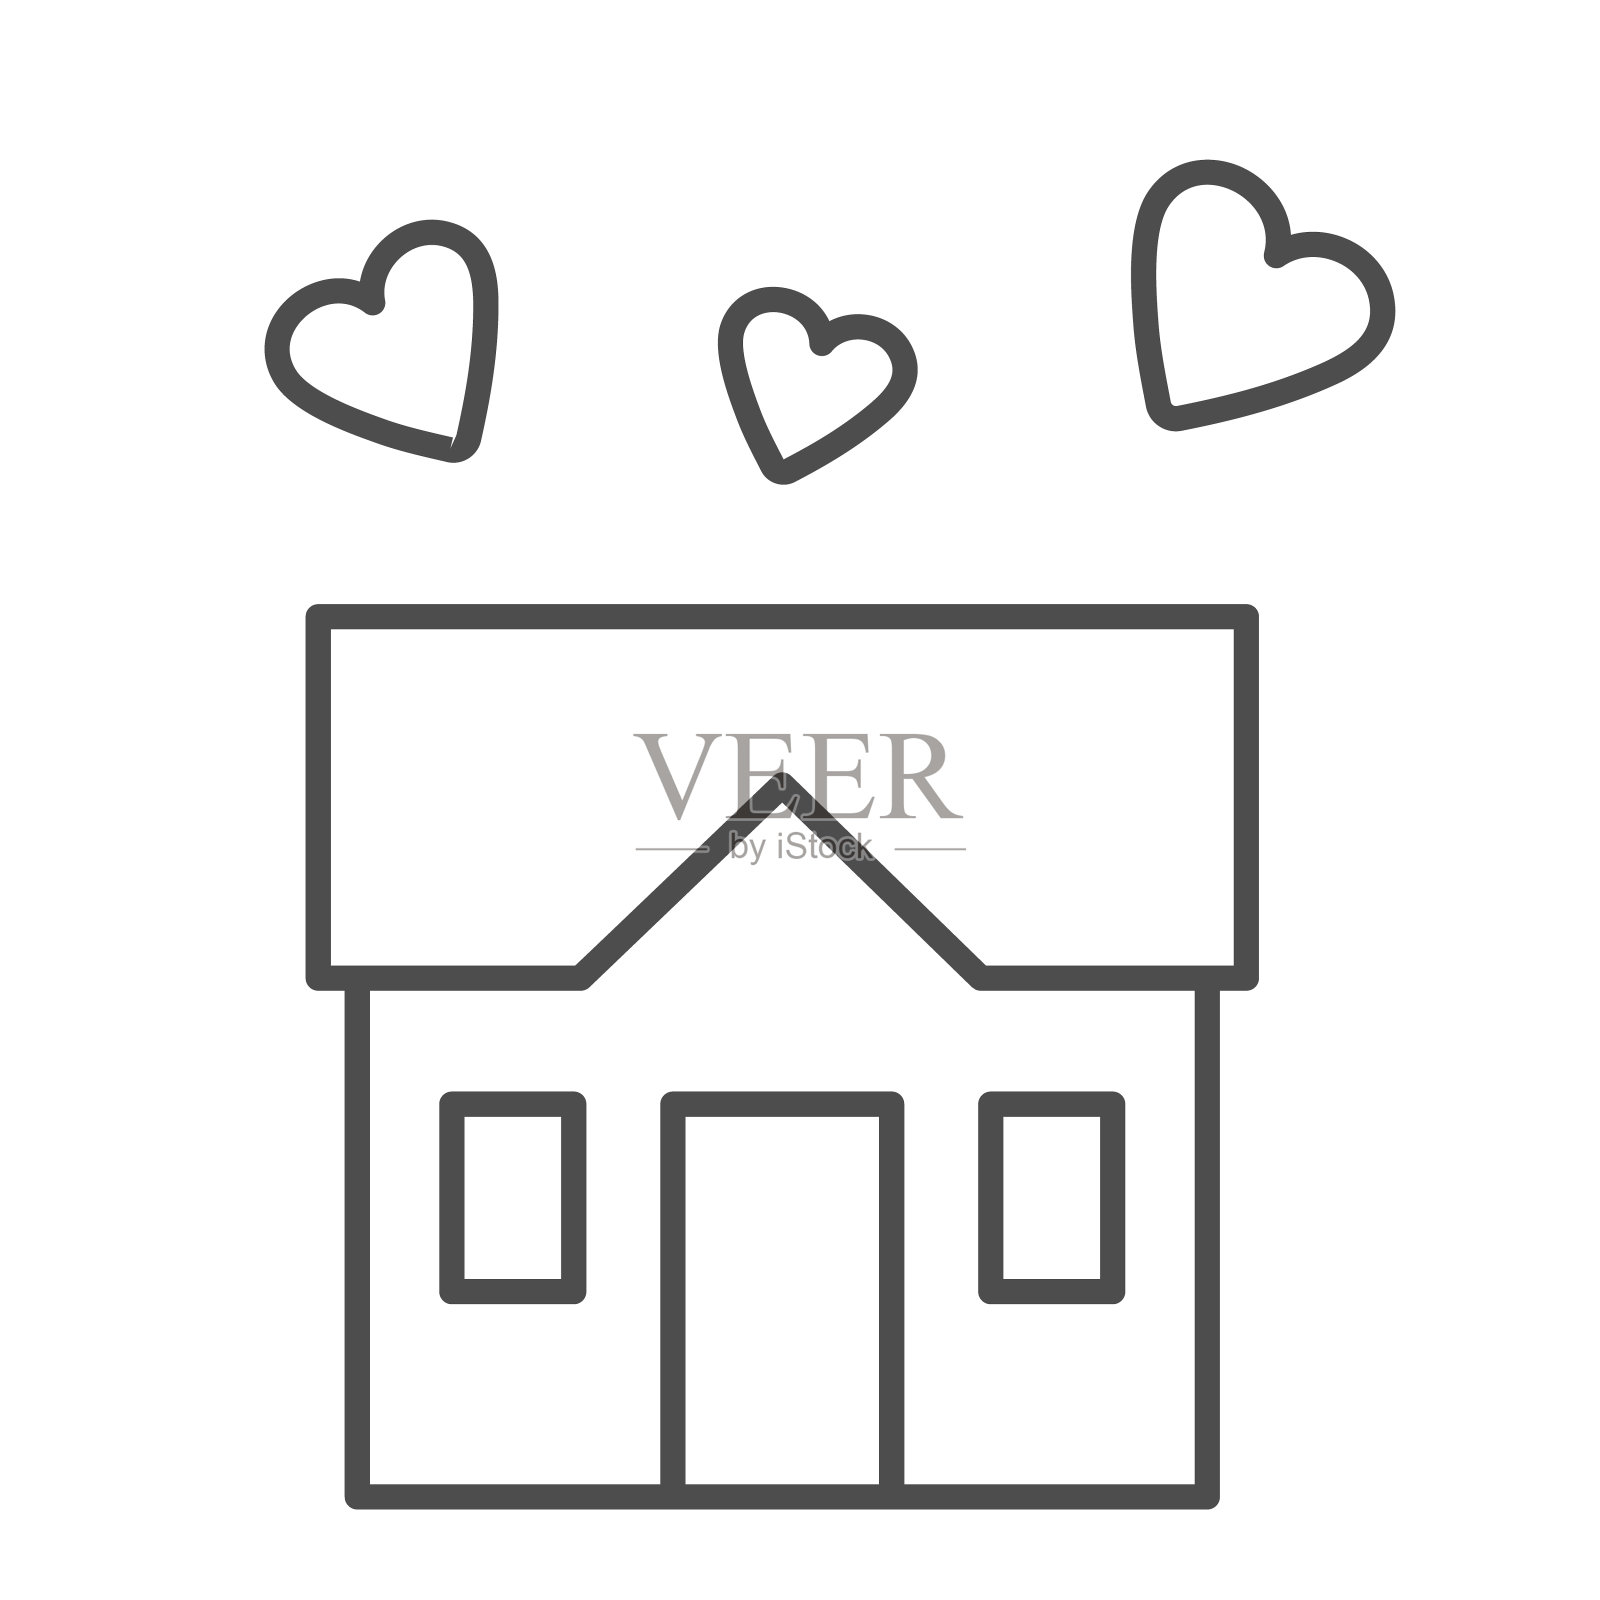 房子充满爱的细线图标，甜蜜的家的概念，建筑与白色背景上的心标志，三个心下的房子符号在轮廓风格的移动和网页设计。矢量图形。图标素材